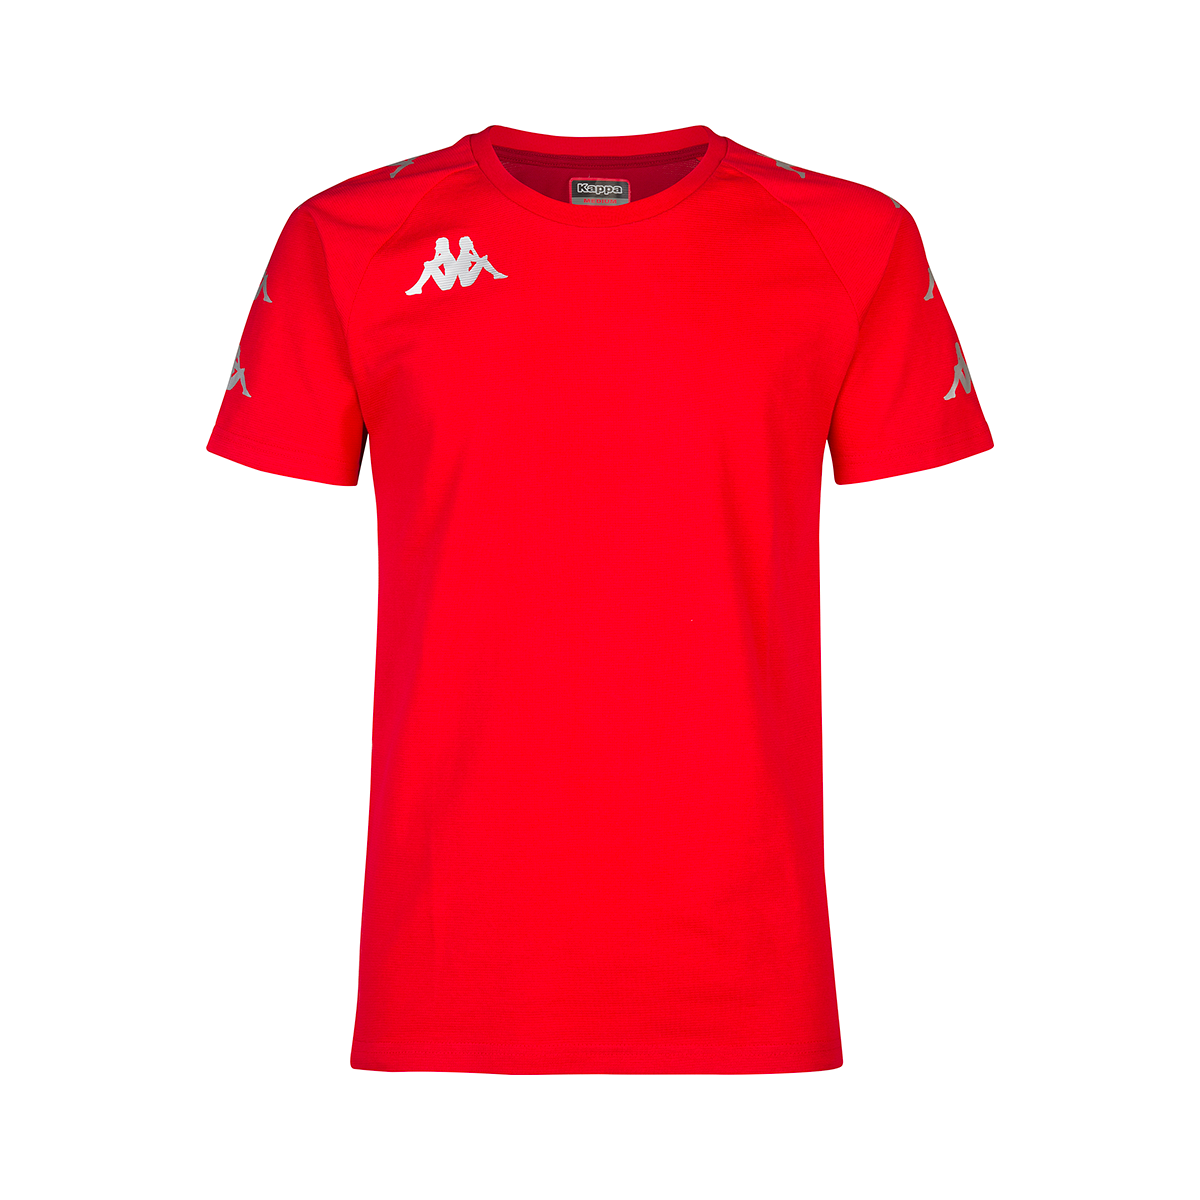 Camiseta Ancone niño Rojo - Imagen 1